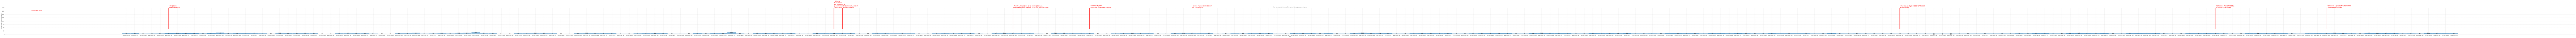 Гистограмма, показывающая количество предложений домов, дач и коттеджей в Крыму по дням c 2023-06-01 по 2024-02-29